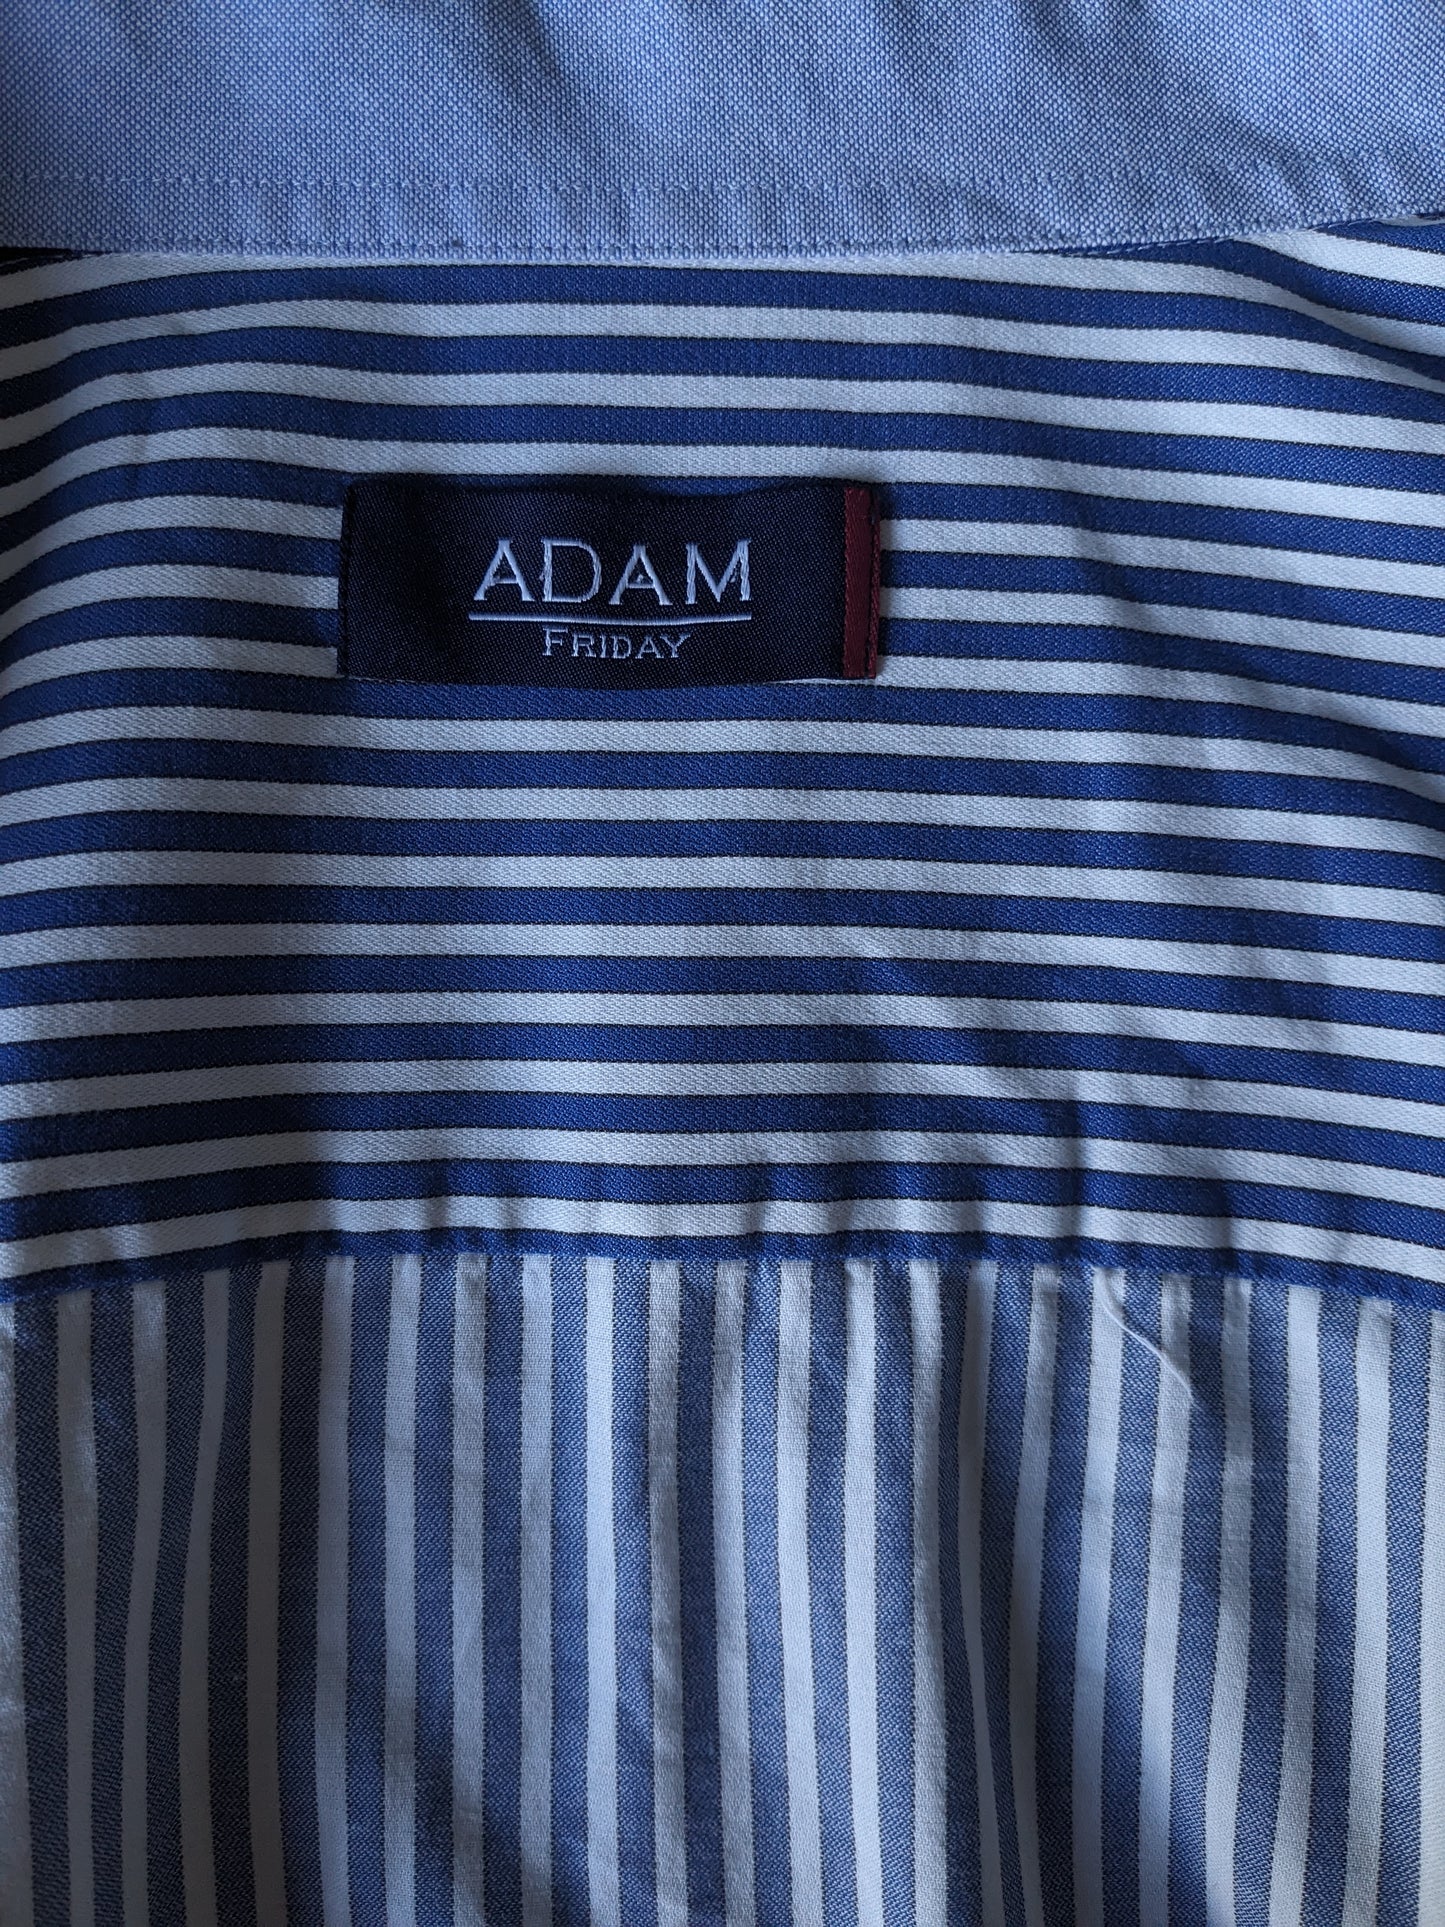 Camicia Adam Friday. Strisce bianche blu. Dimensione 3xl / xxxl.